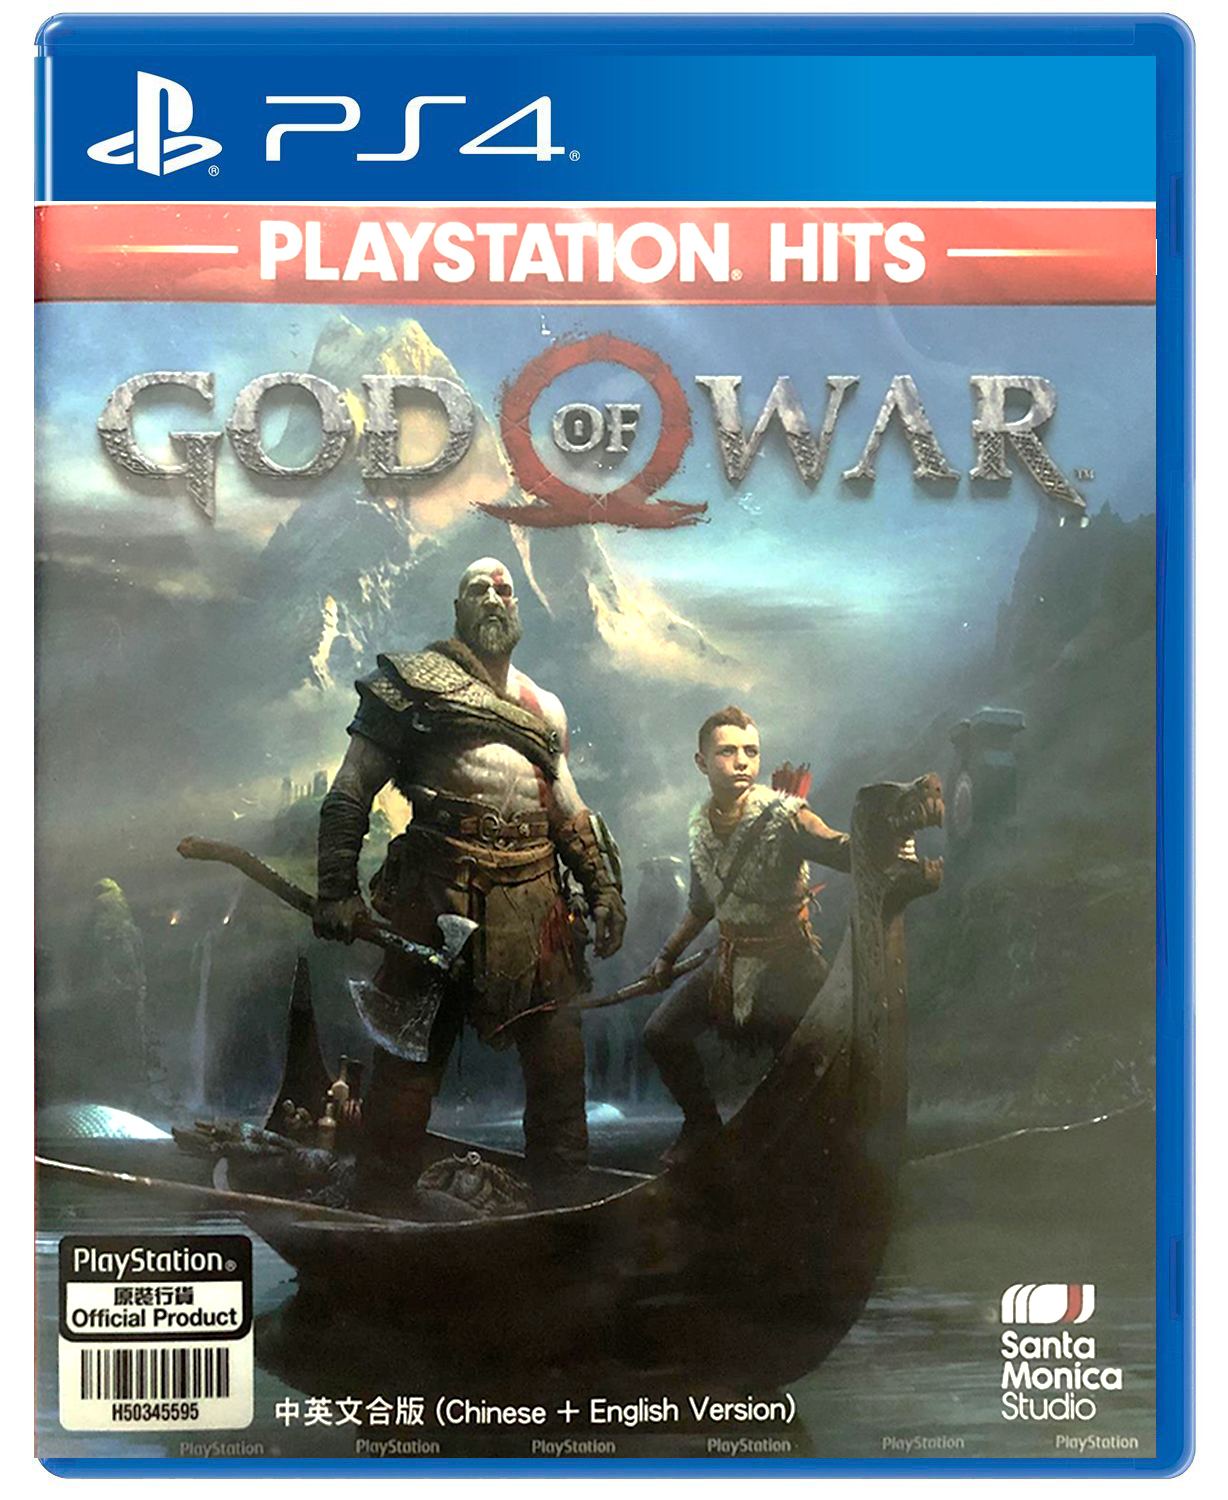 God of War 3 Playstation Hits PS4